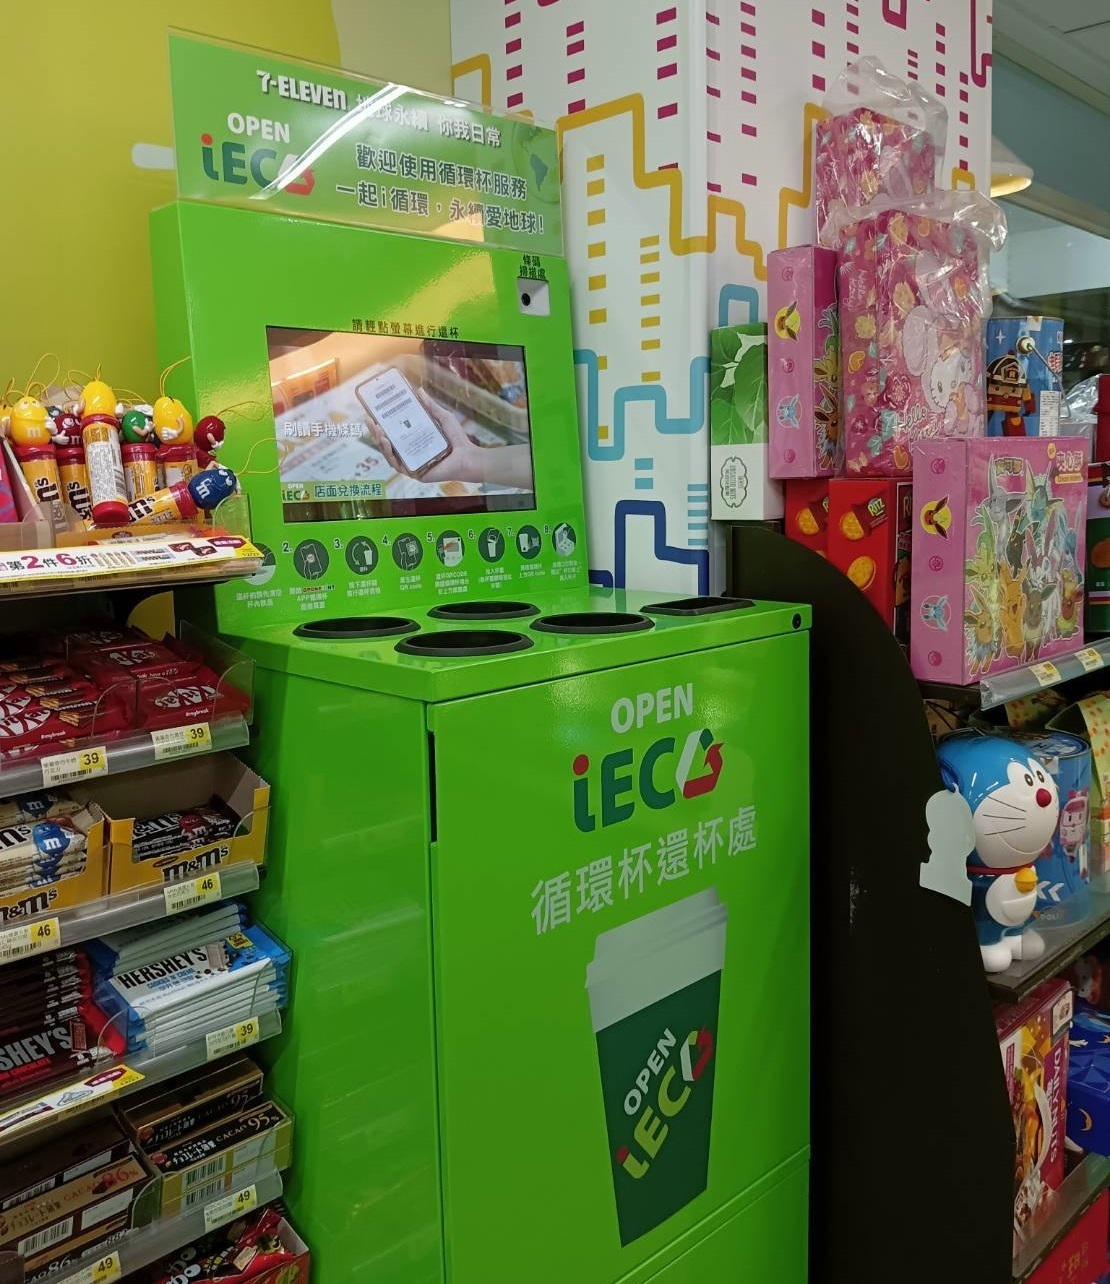 Từ ngày 1/1/2023 Đài Loan thực hiện quy định mới về ly bảo vệ môi trường đối với các hệ thống kinh doanh chuỗi cửa hàng tiện lợi và Fastfood và áp dụng ưu đãi giảm giá 5 Đài tệ cho người tự mang theo ly tái sử dụng (Nguồn ảnh: Facebook)